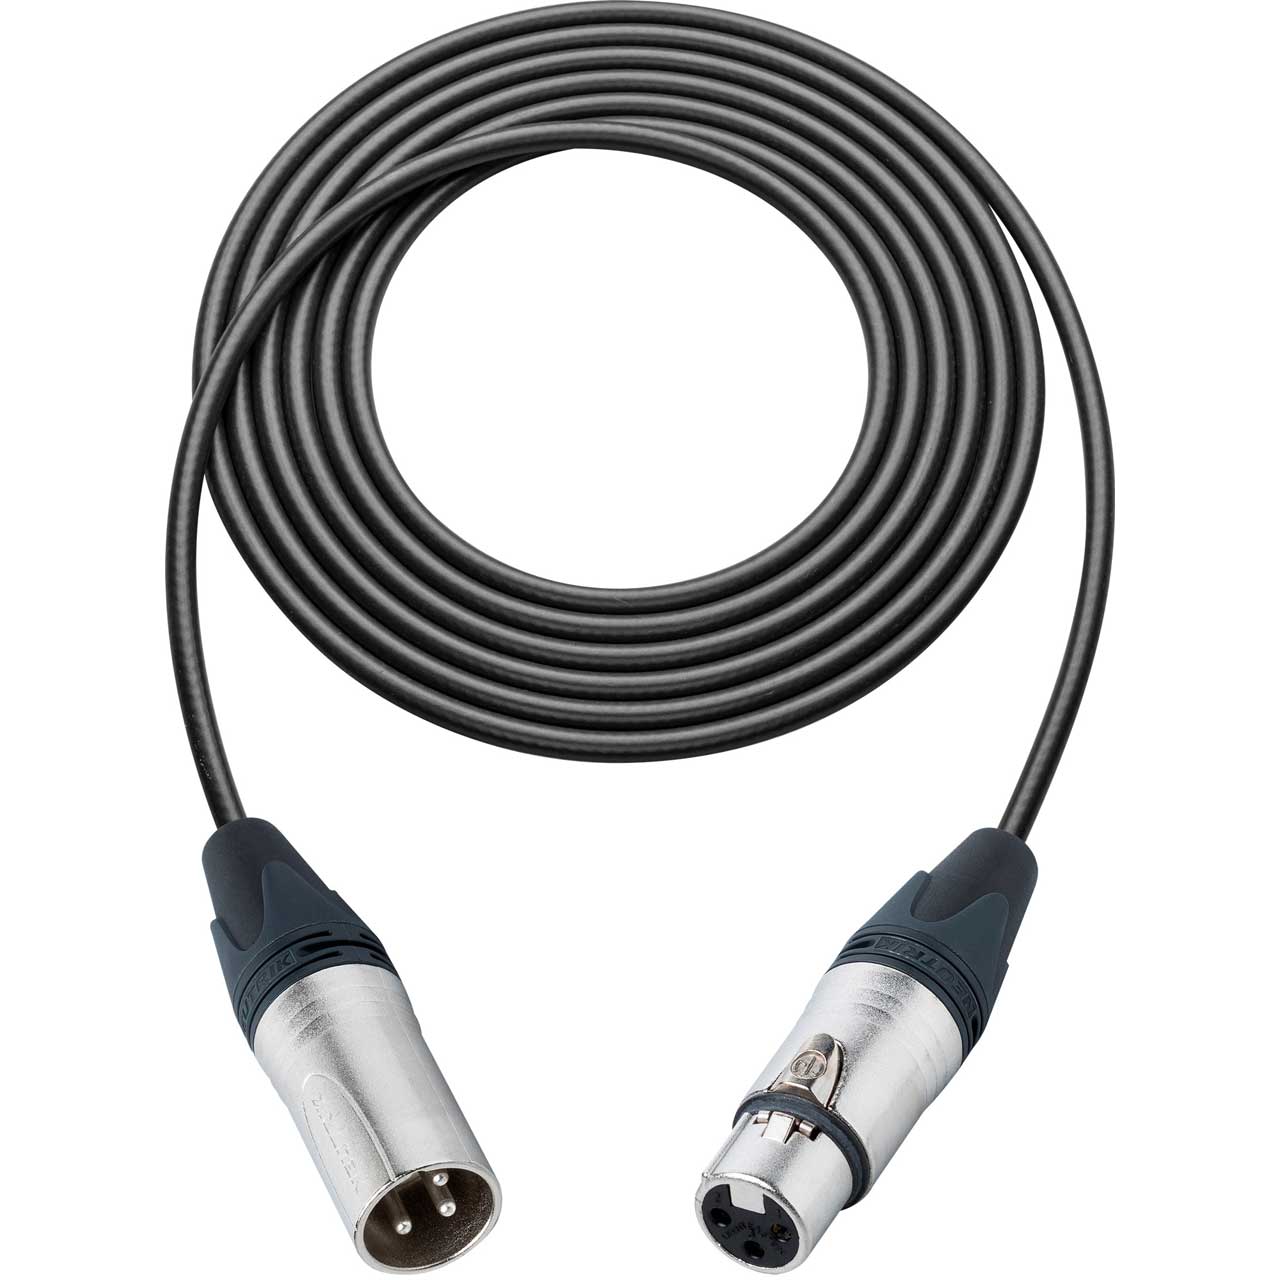 Balanced Audio Cable Black to XLR-F Canare L-4E6S XLR-M 6 Ft male female 